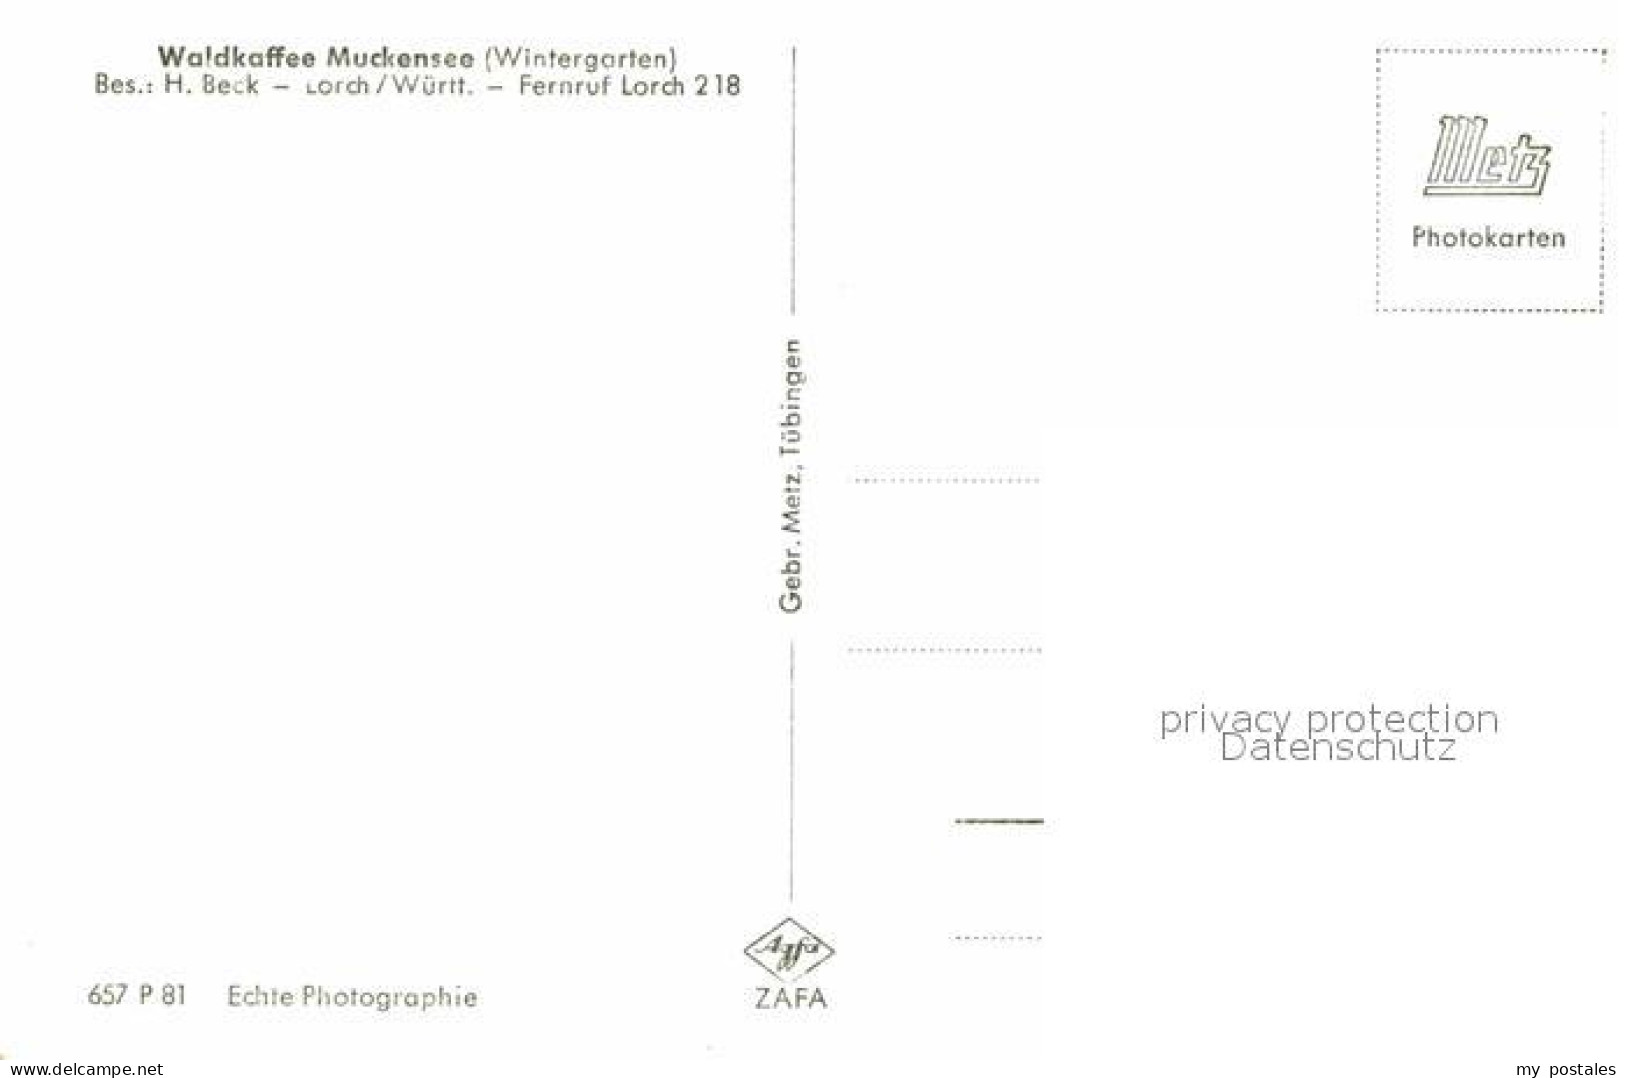 72796978 Lorch Wuerttemberg WaldCafe Muckensee Wintergarten Lorch - Lorch